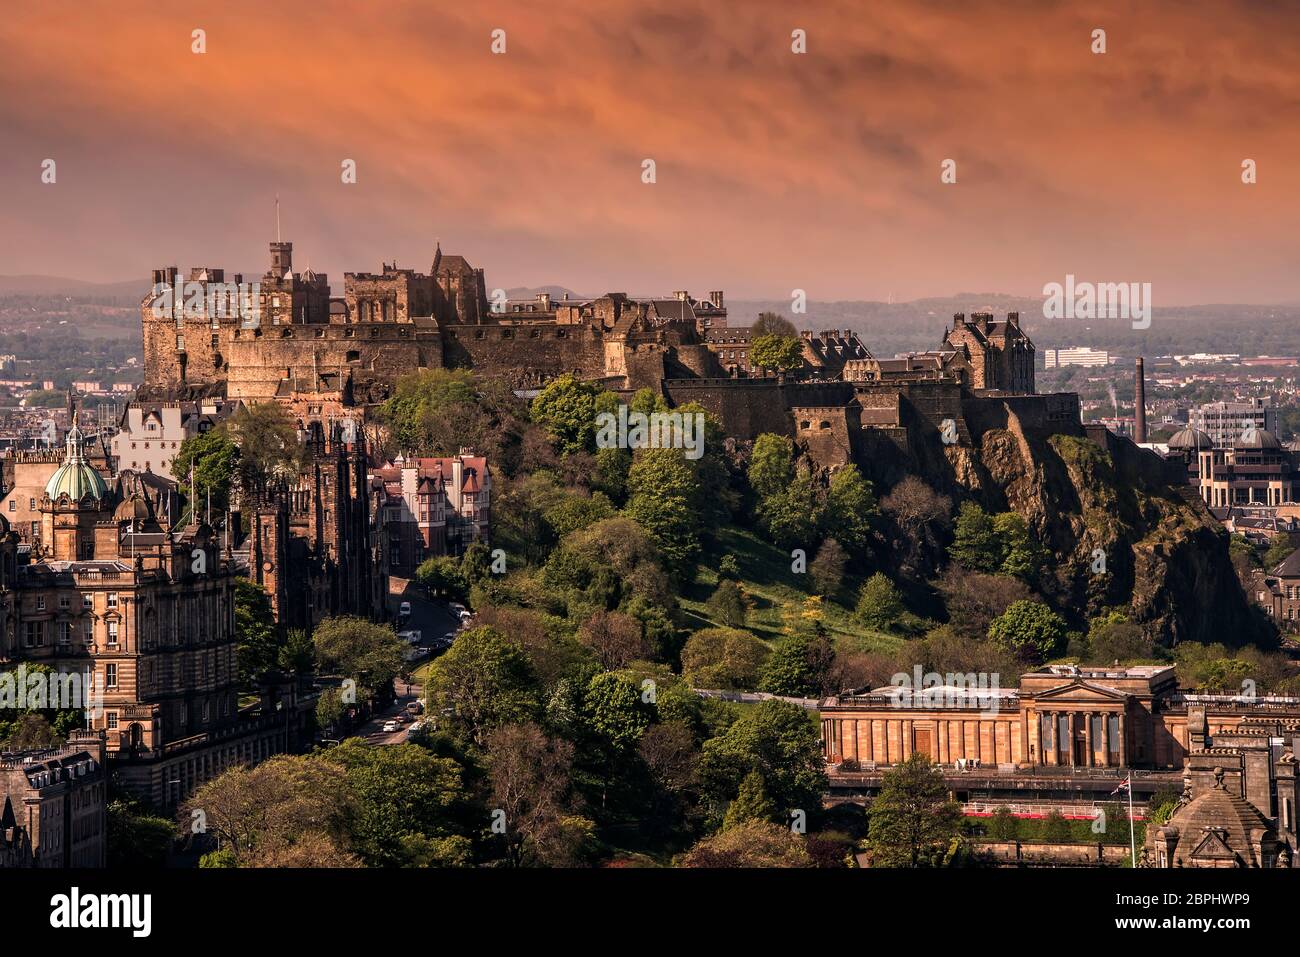 Castello di Edimburgo, una fortezza storica che domina la città di Edimburgo, la capitale della Scozia, dalla sua posizione sulla roccia del Castello. Foto Stock